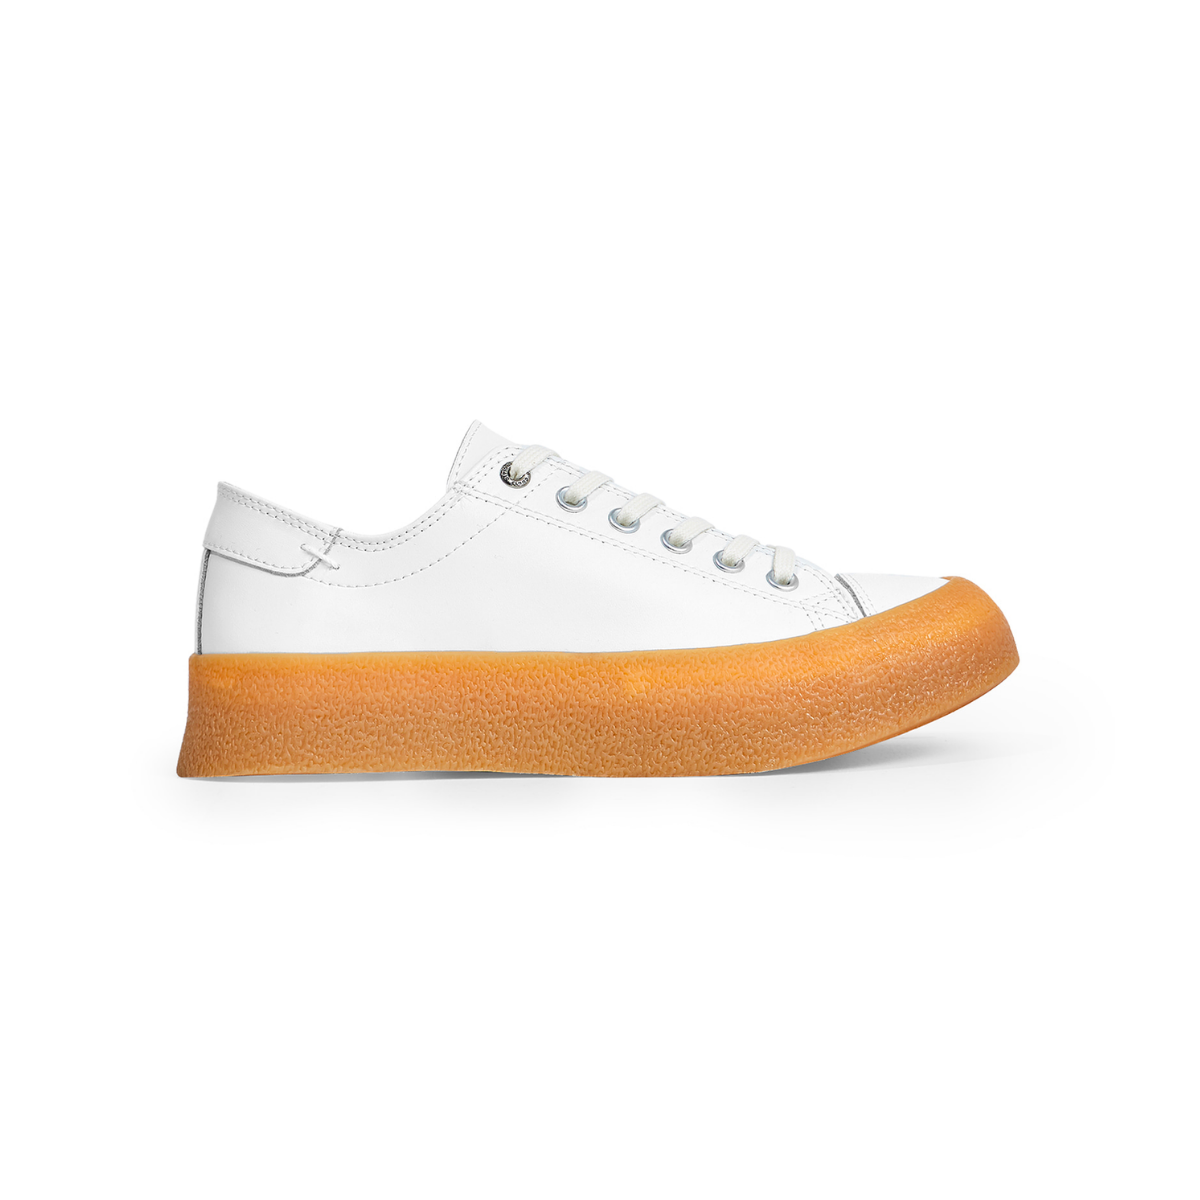 Giày thể thao nam nữ EPT - DIVE LE (White/Gum) - Màu trắng đế vàng